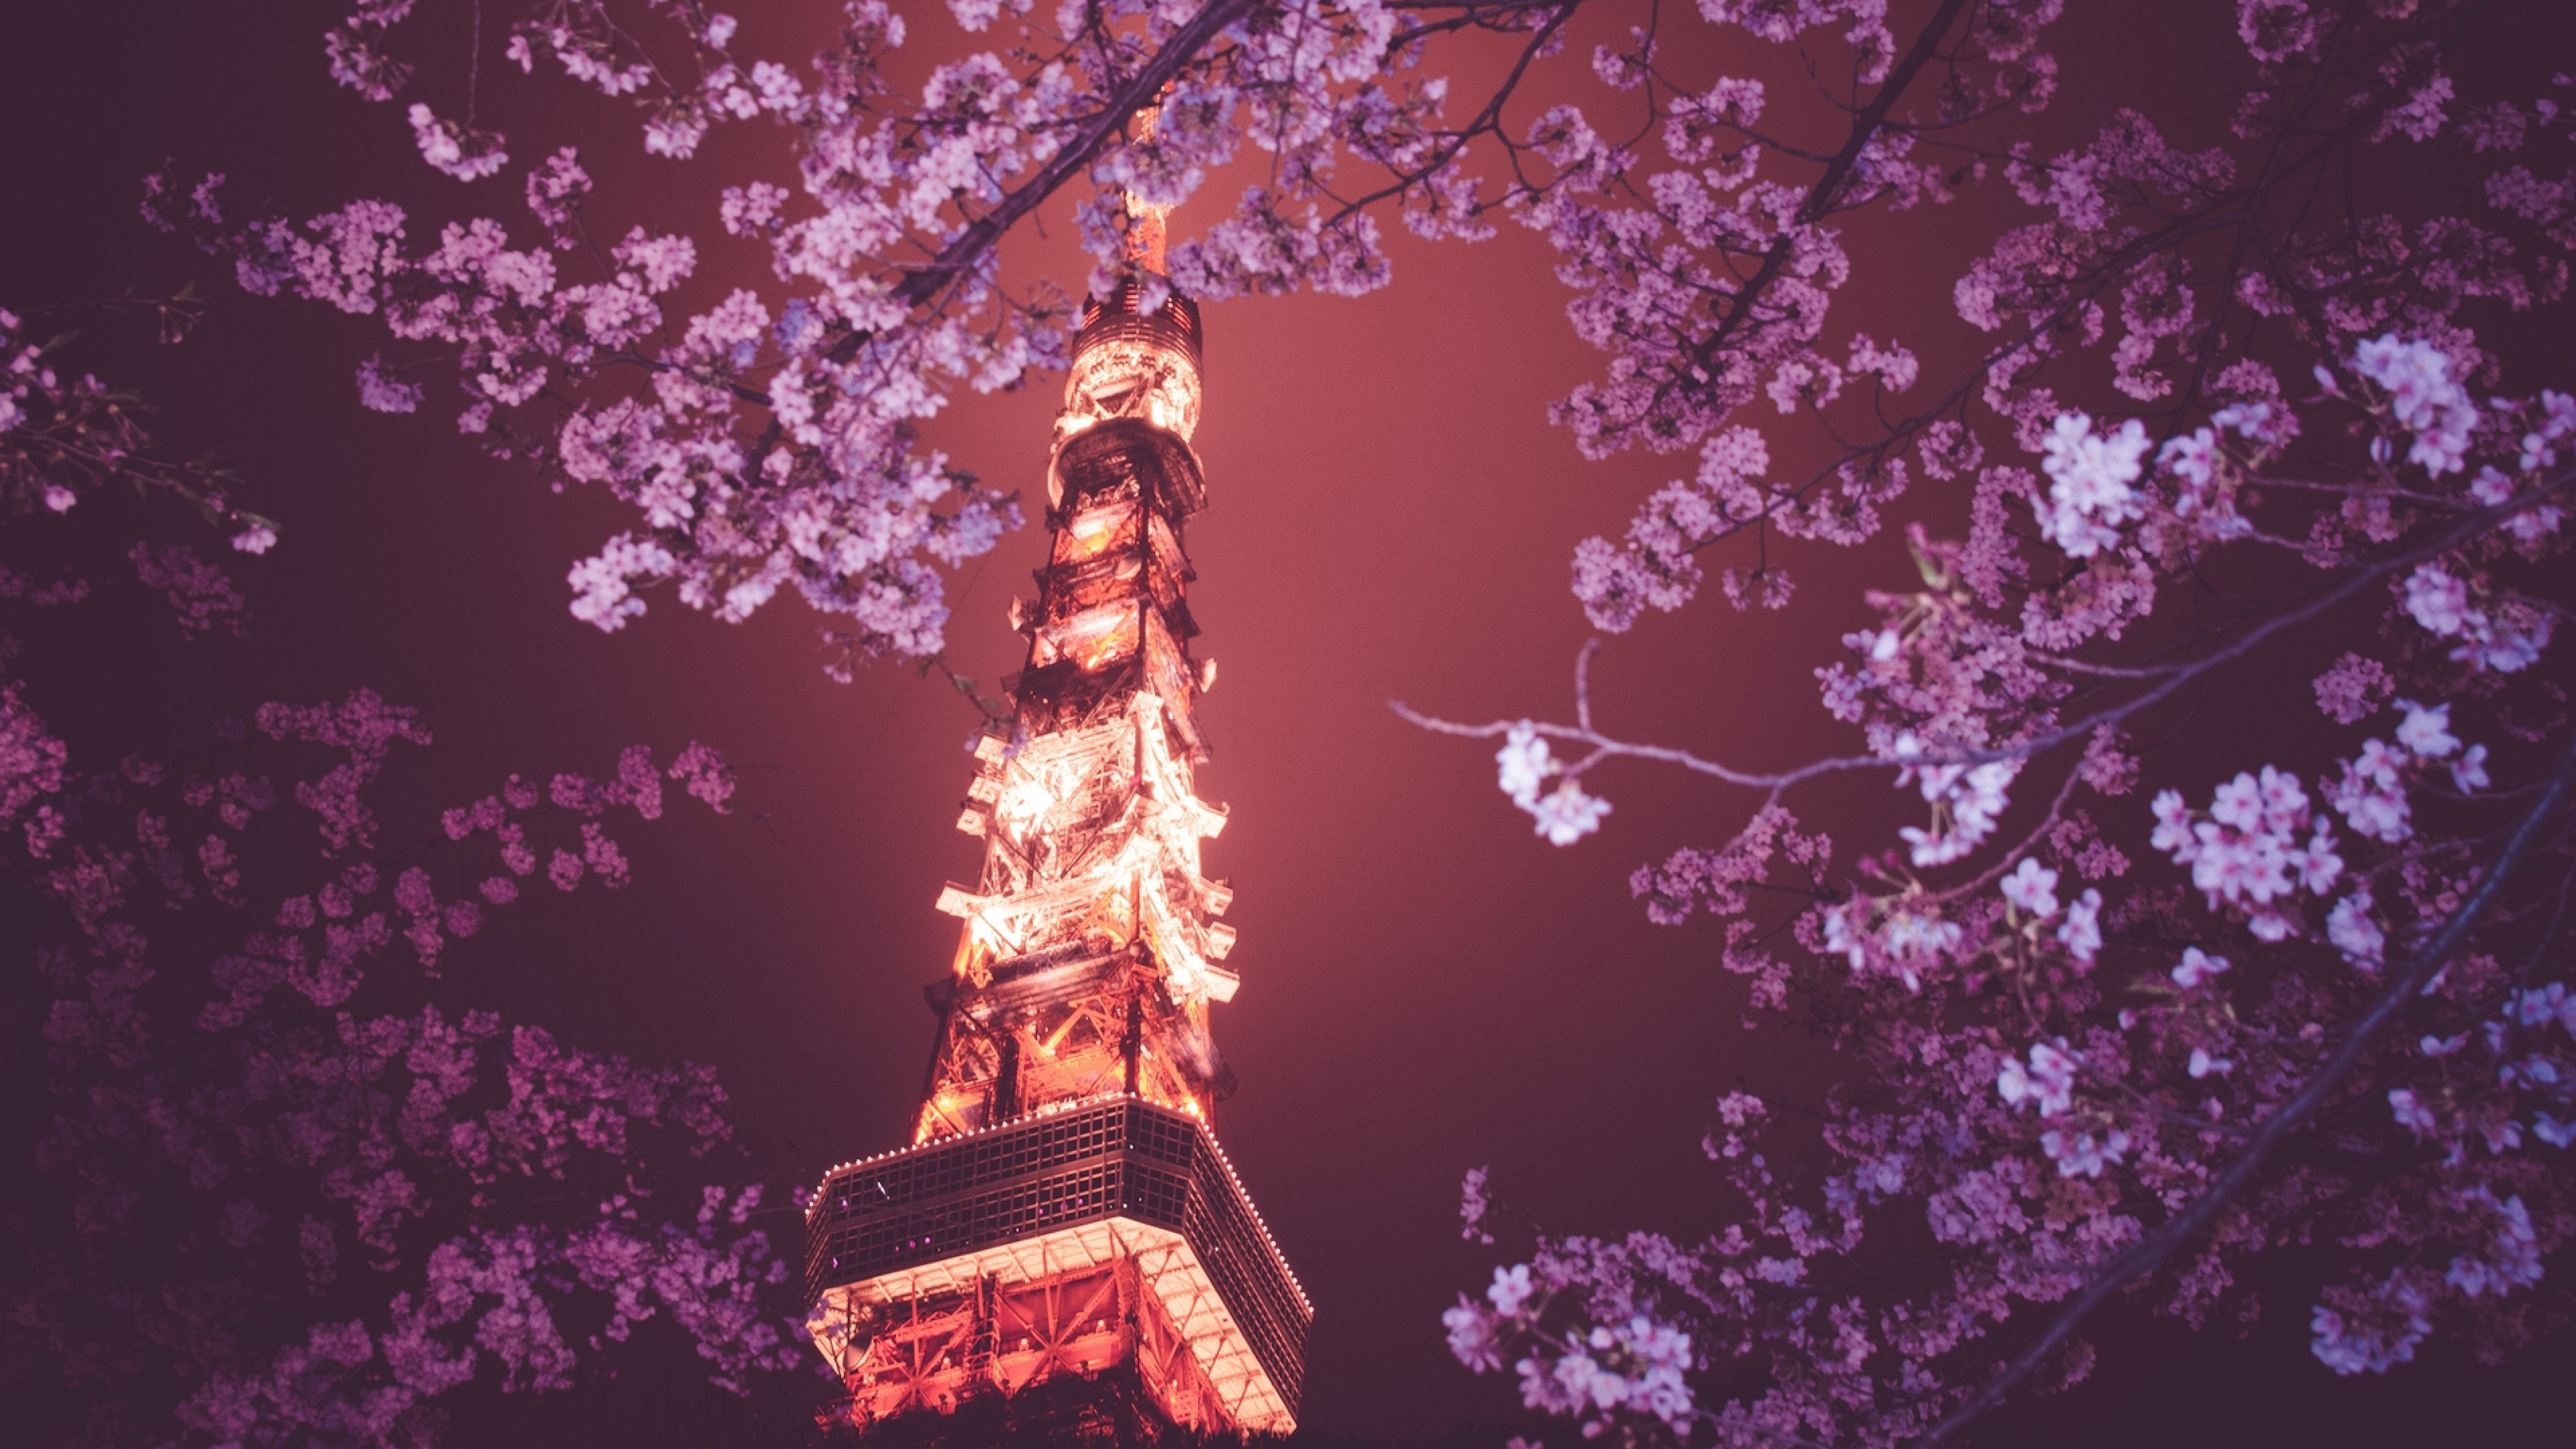 Tokyo Tower, Sakura blossom, Cherry lights, UHD TV wallpaper, 3840x2160 4K Desktop